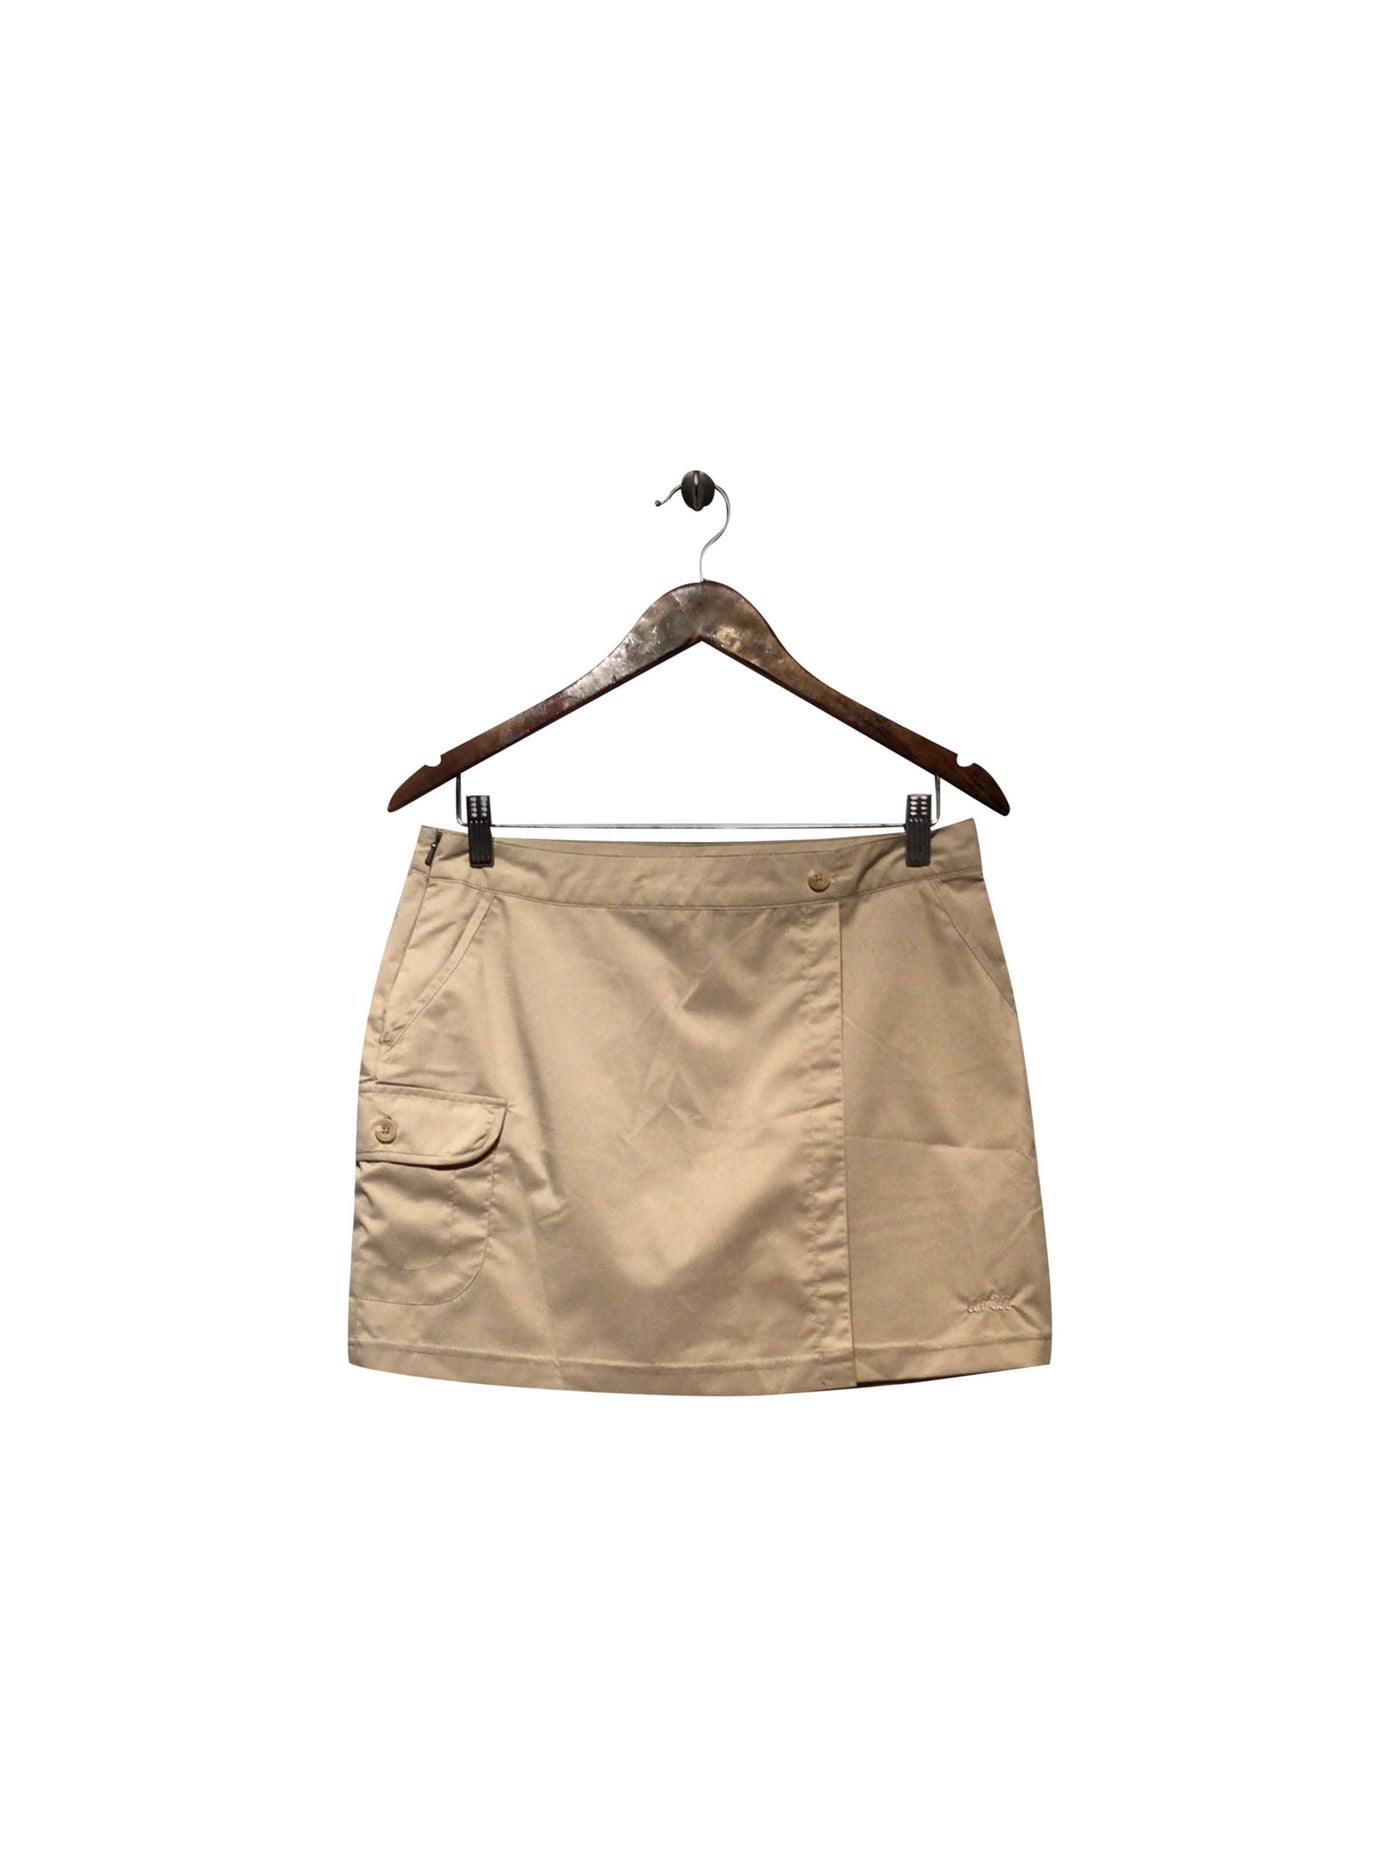 AVIA Regular fit Skirt in Beige  -  S  11.99 Koop